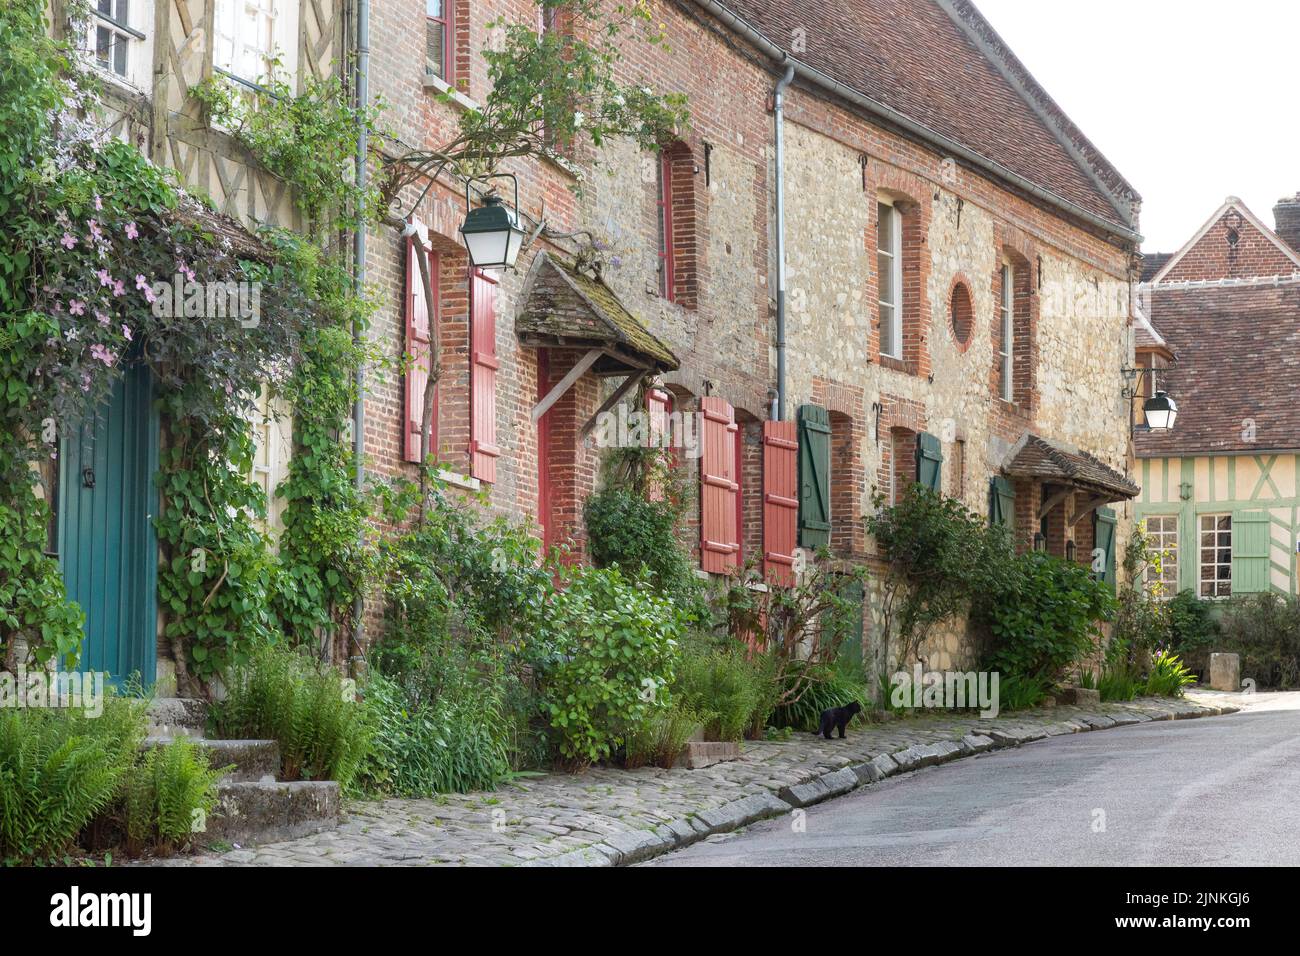 Francia, Oise, Picardie, Pays de Bray, Gerberoy, Etiquetado Les Plus Beaux Villages de France (los pueblos más bellos de Francia), calle florida // Foto de stock